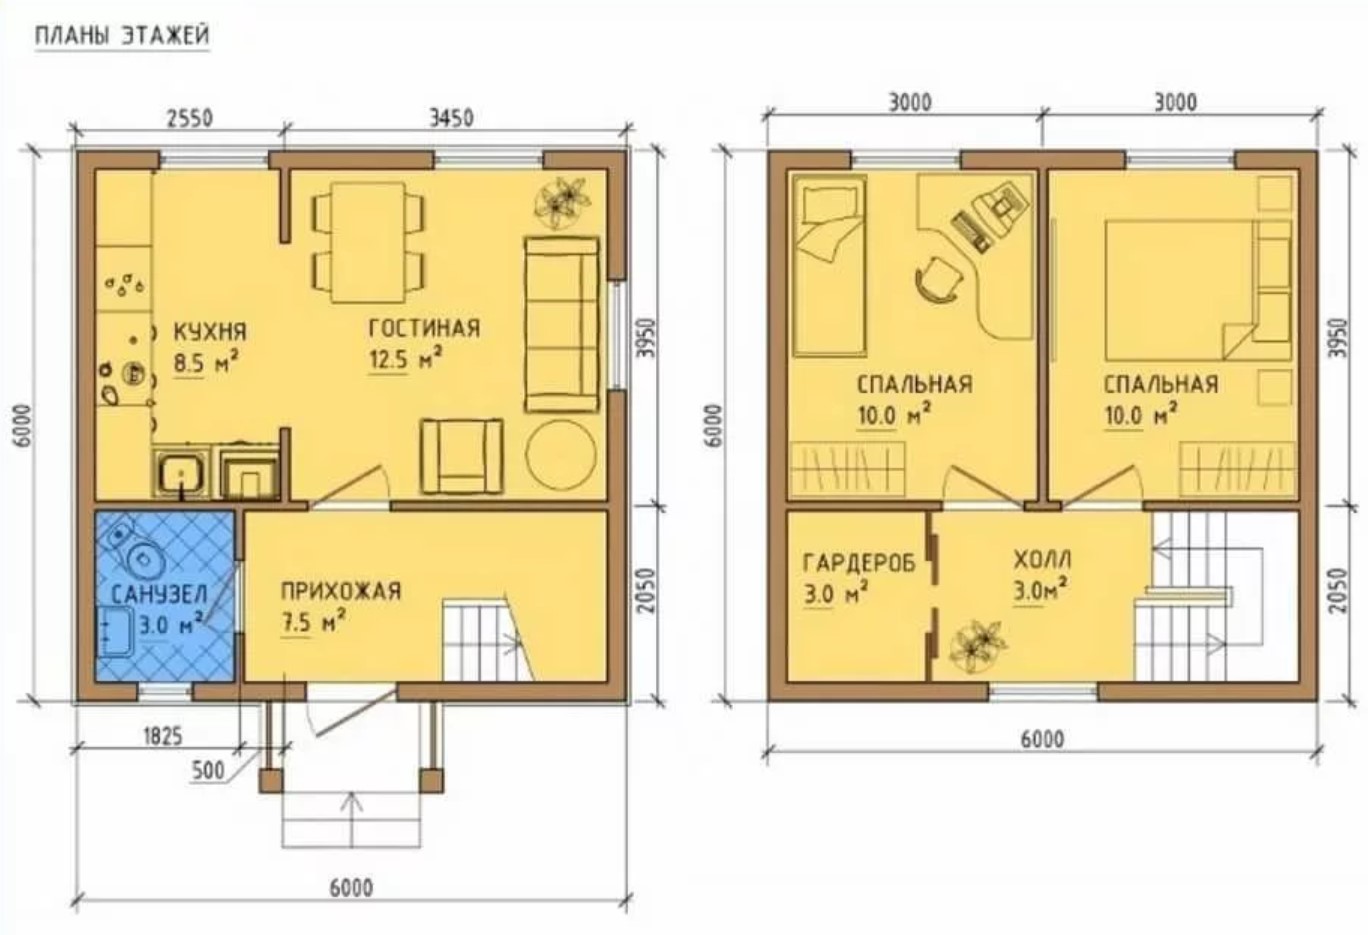 планировка дома с одной комнатой на втором этаже